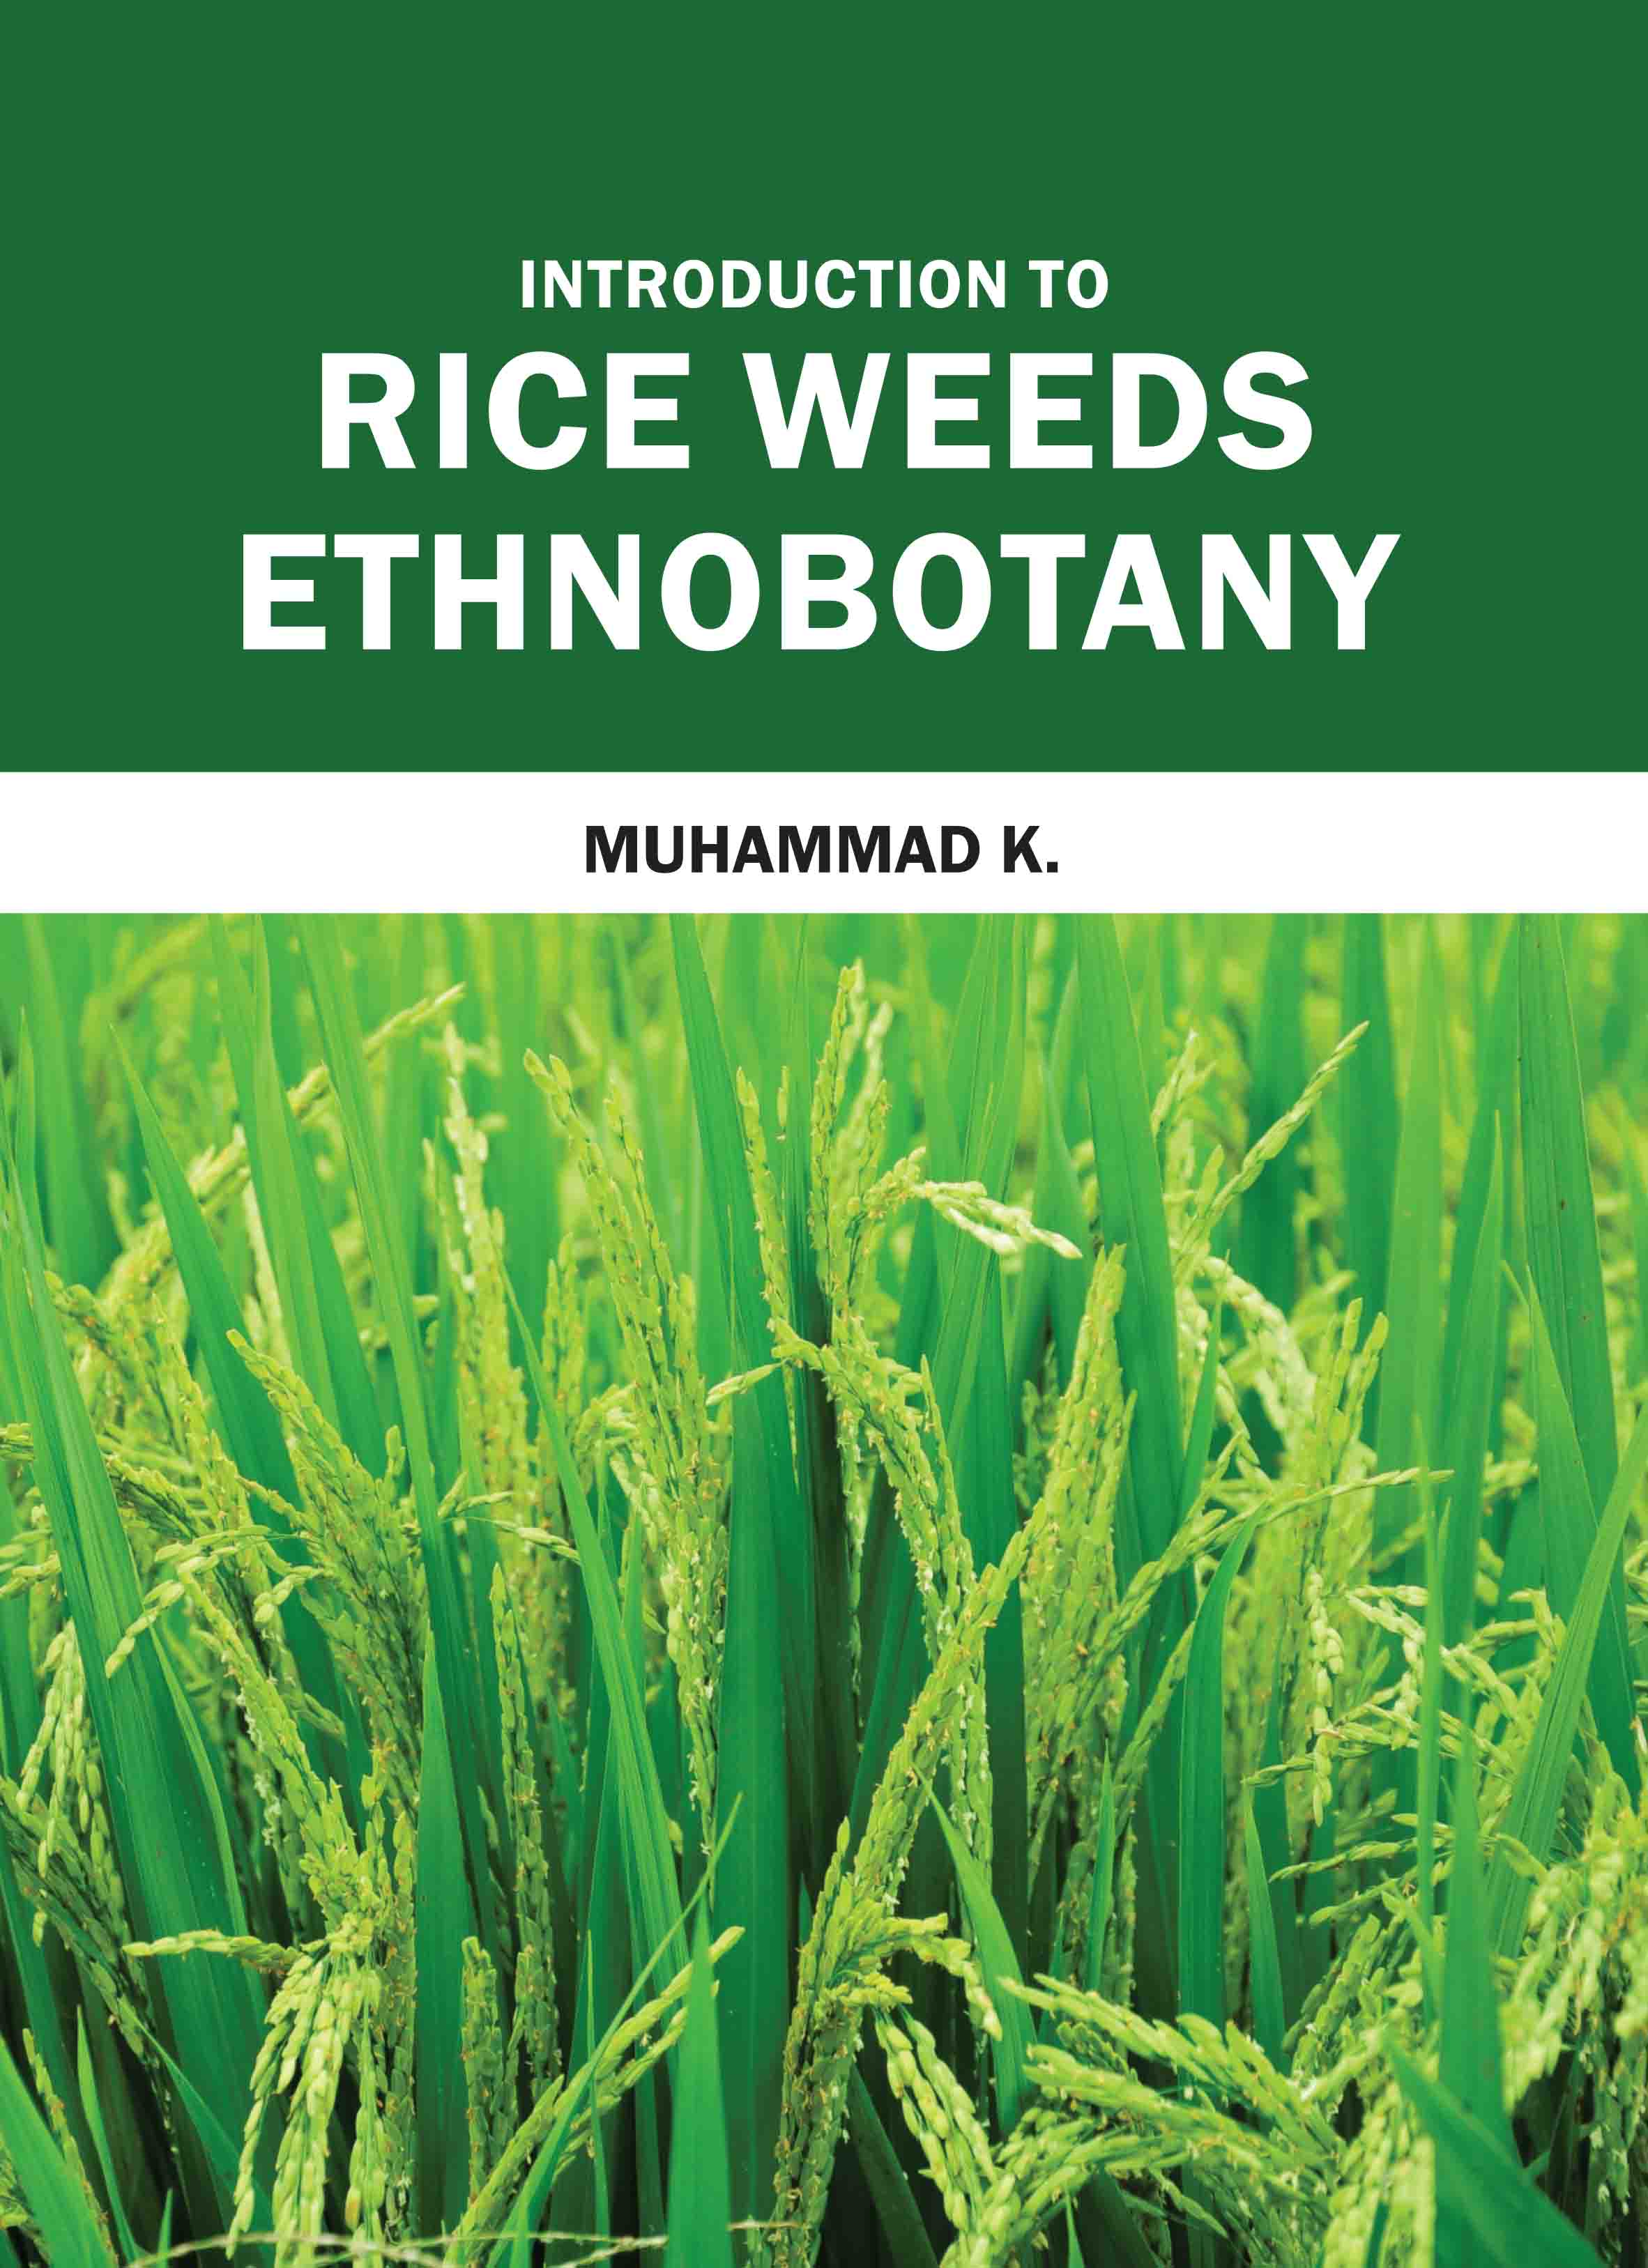 Introduction to Rice Weeds Ethnobotany